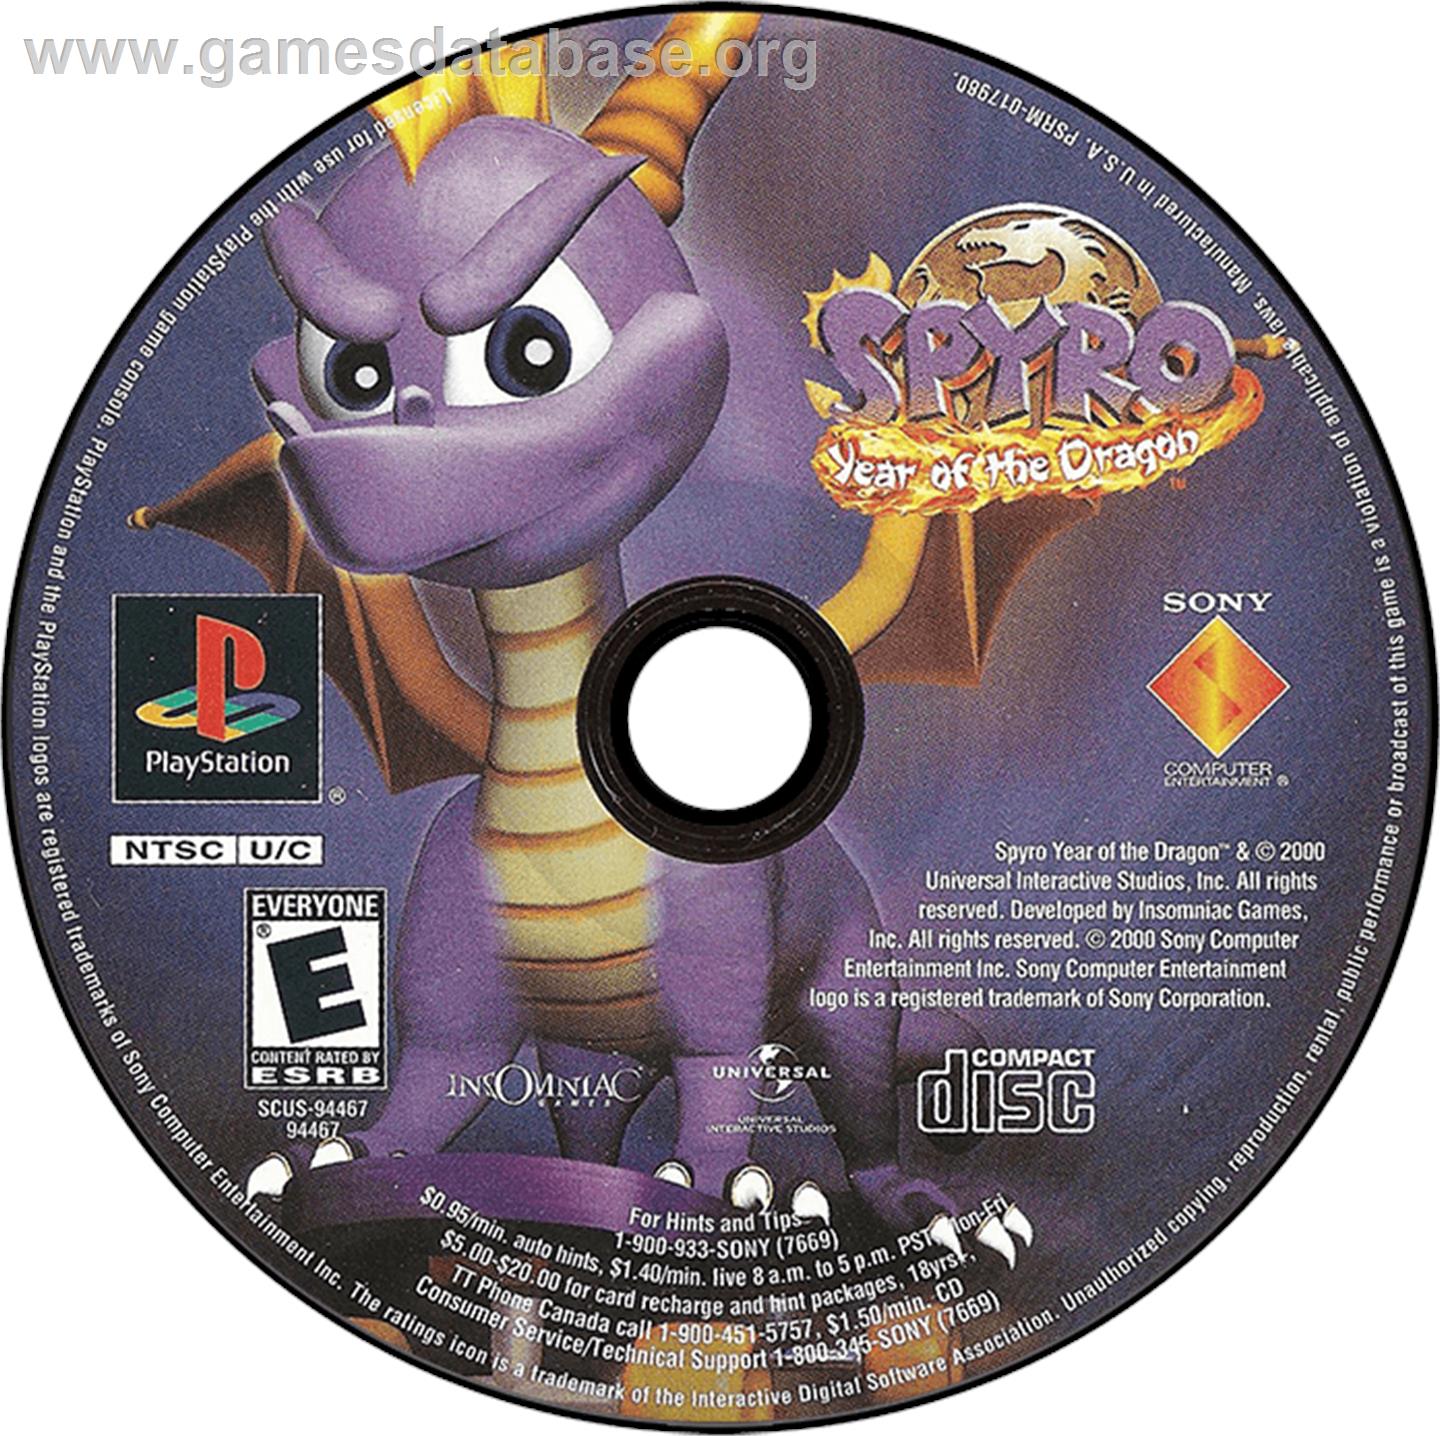 Spyro: Year of the Dragon - Sony Playstation - Artwork - Disc